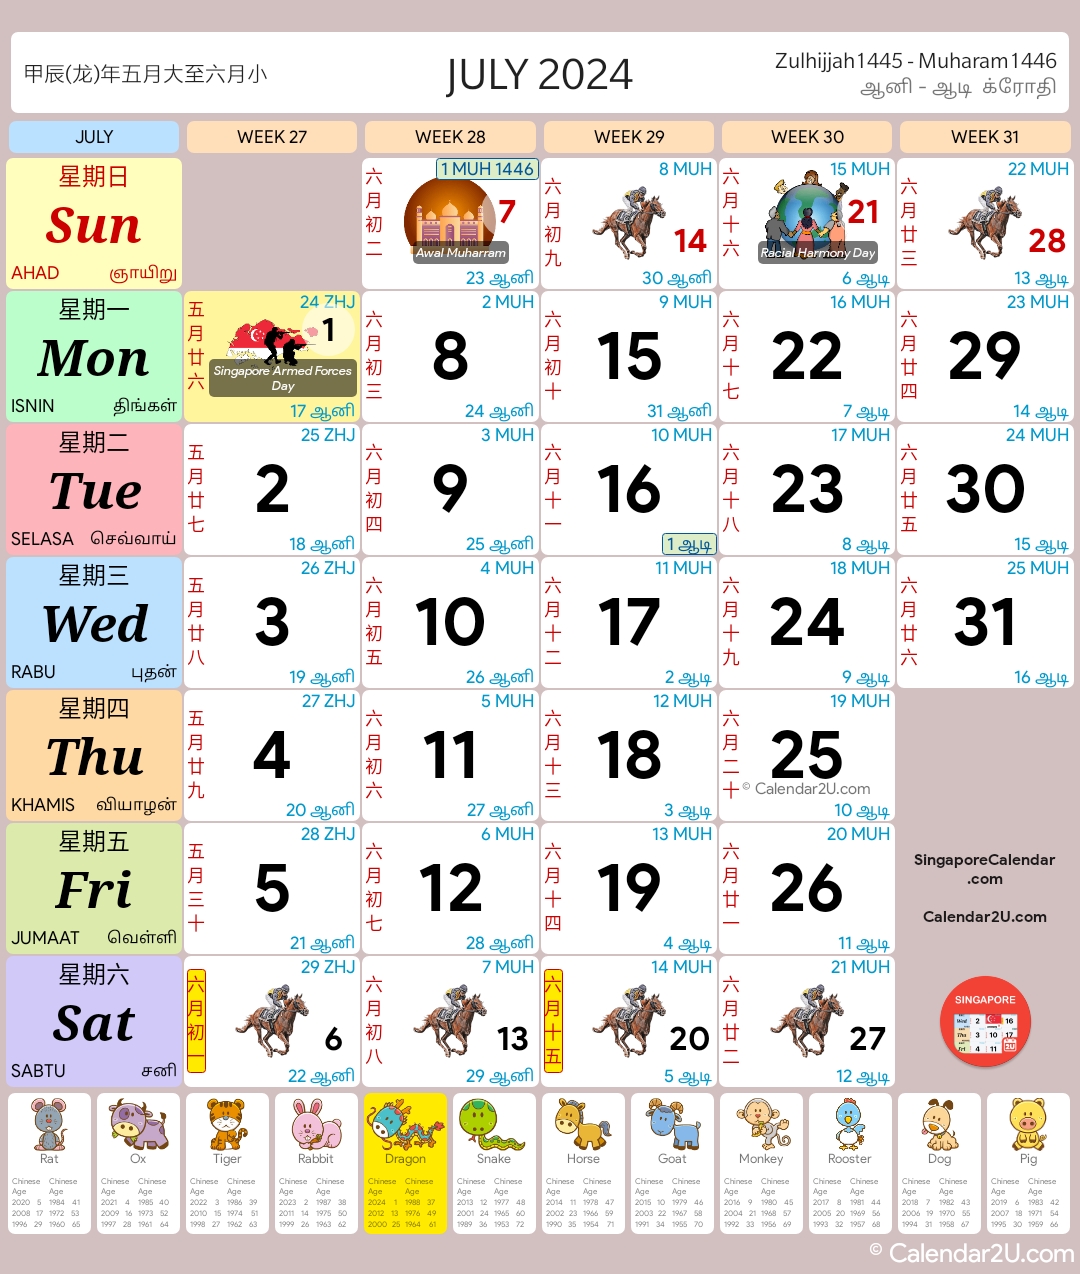 新加坡 (Singapore) Calendar